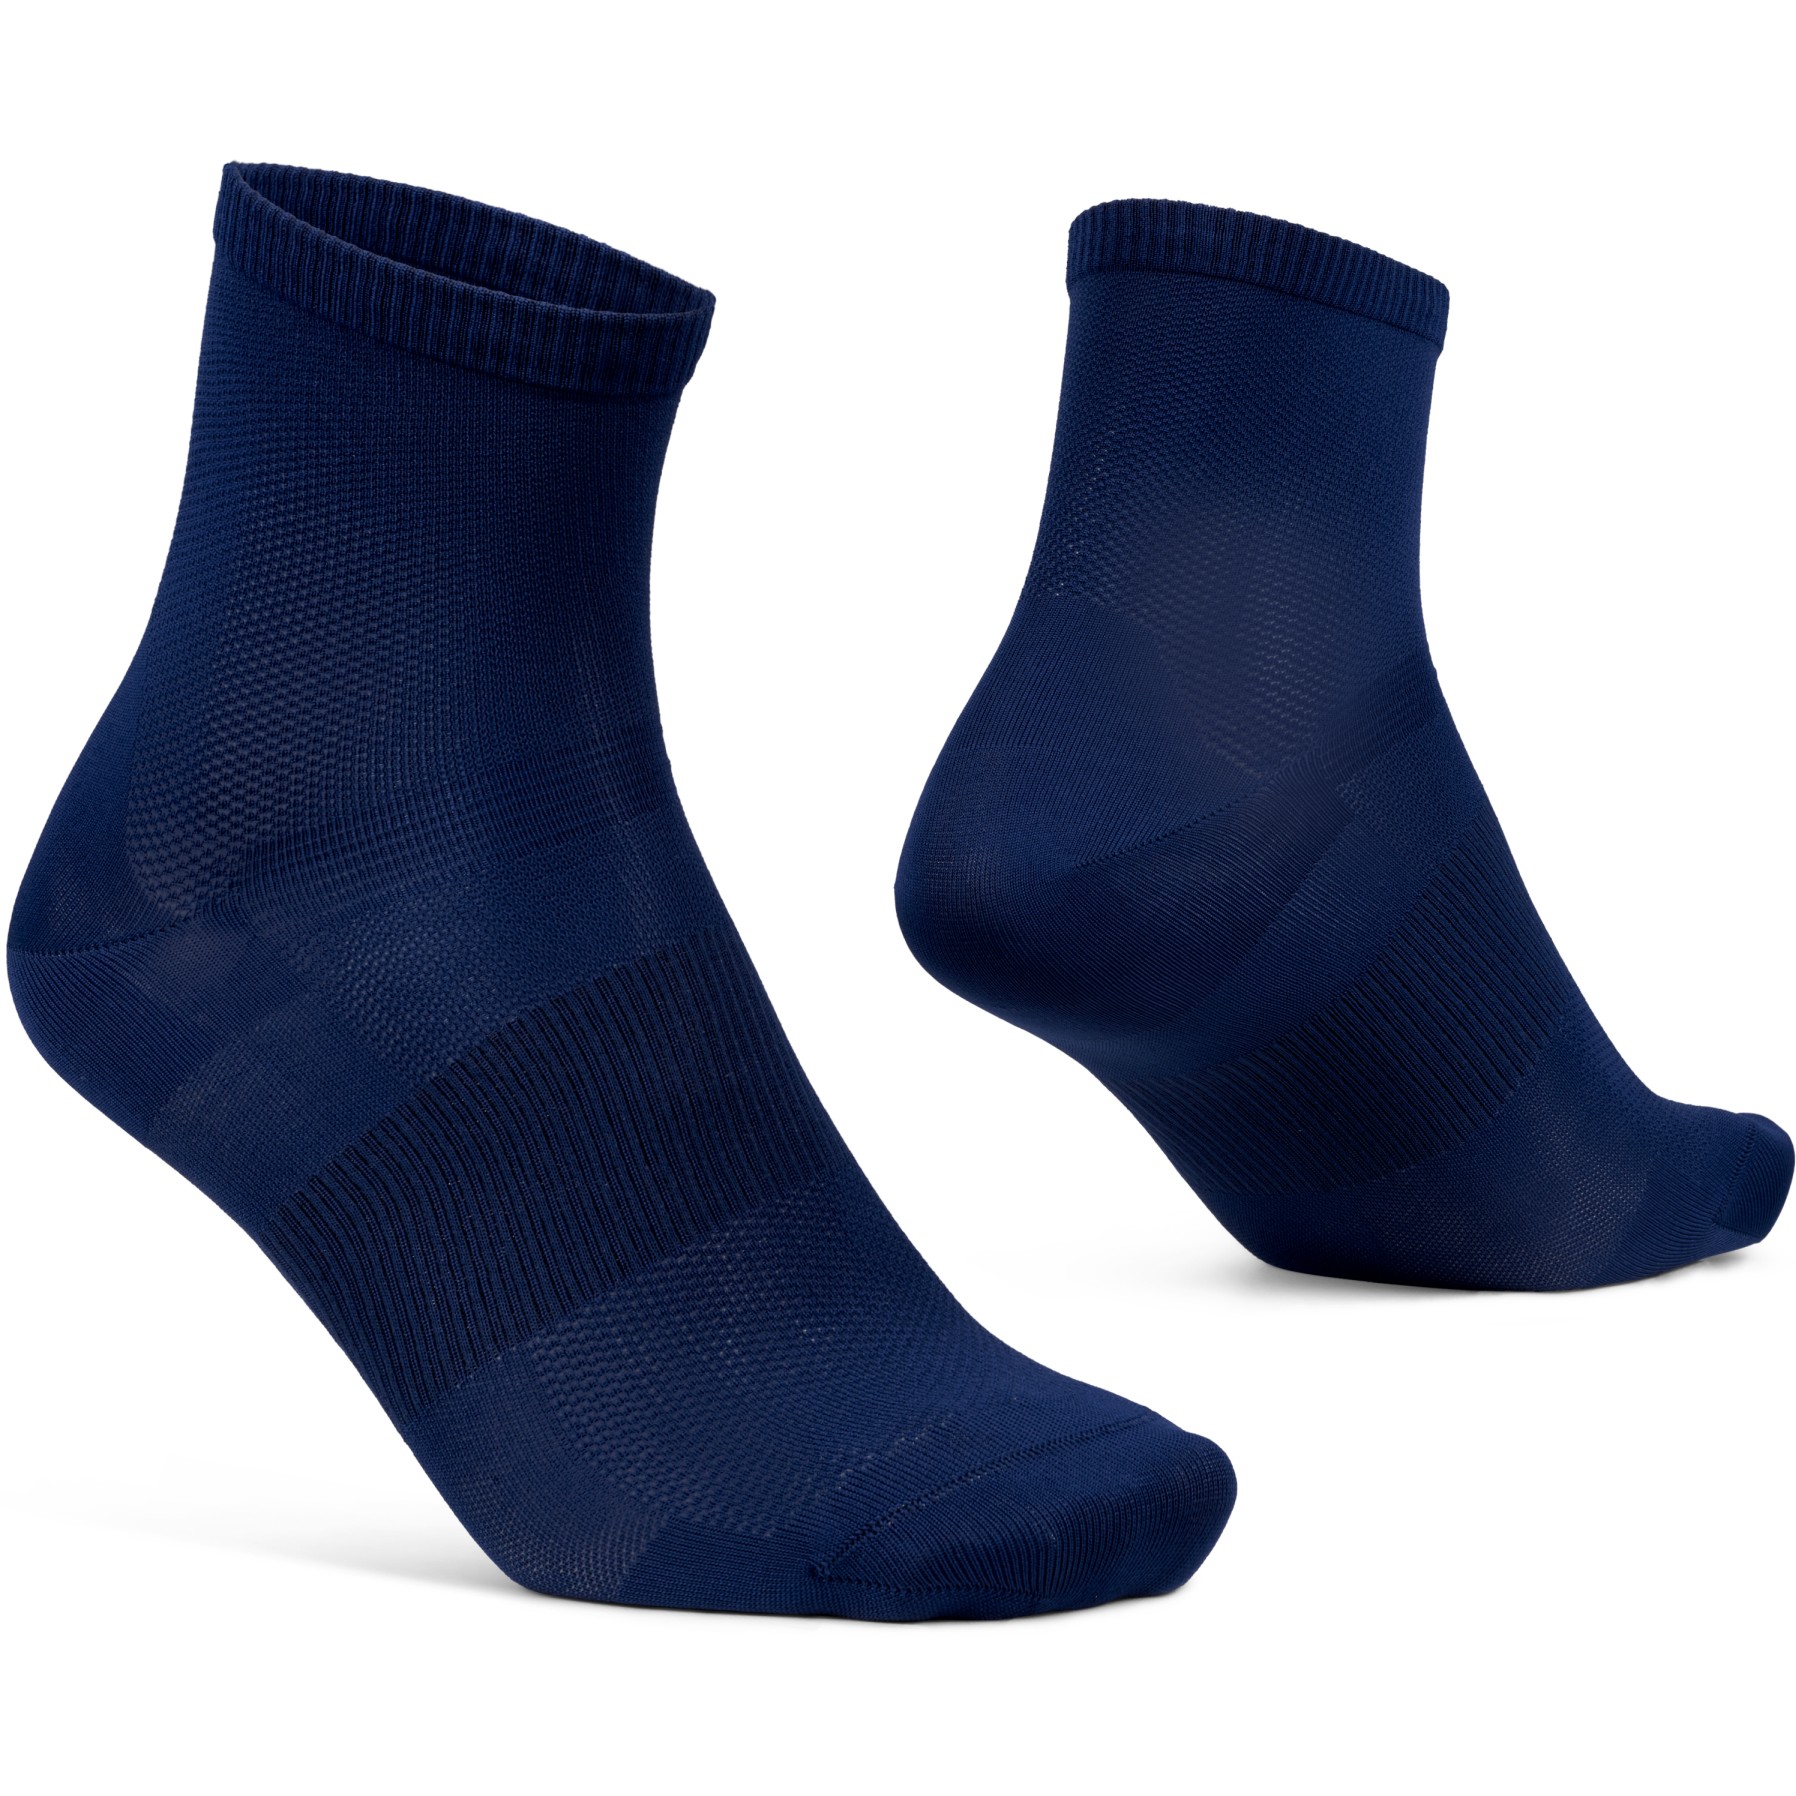 Produktbild von GripGrab Lightweight Airflow Short Socken - Navy Blue